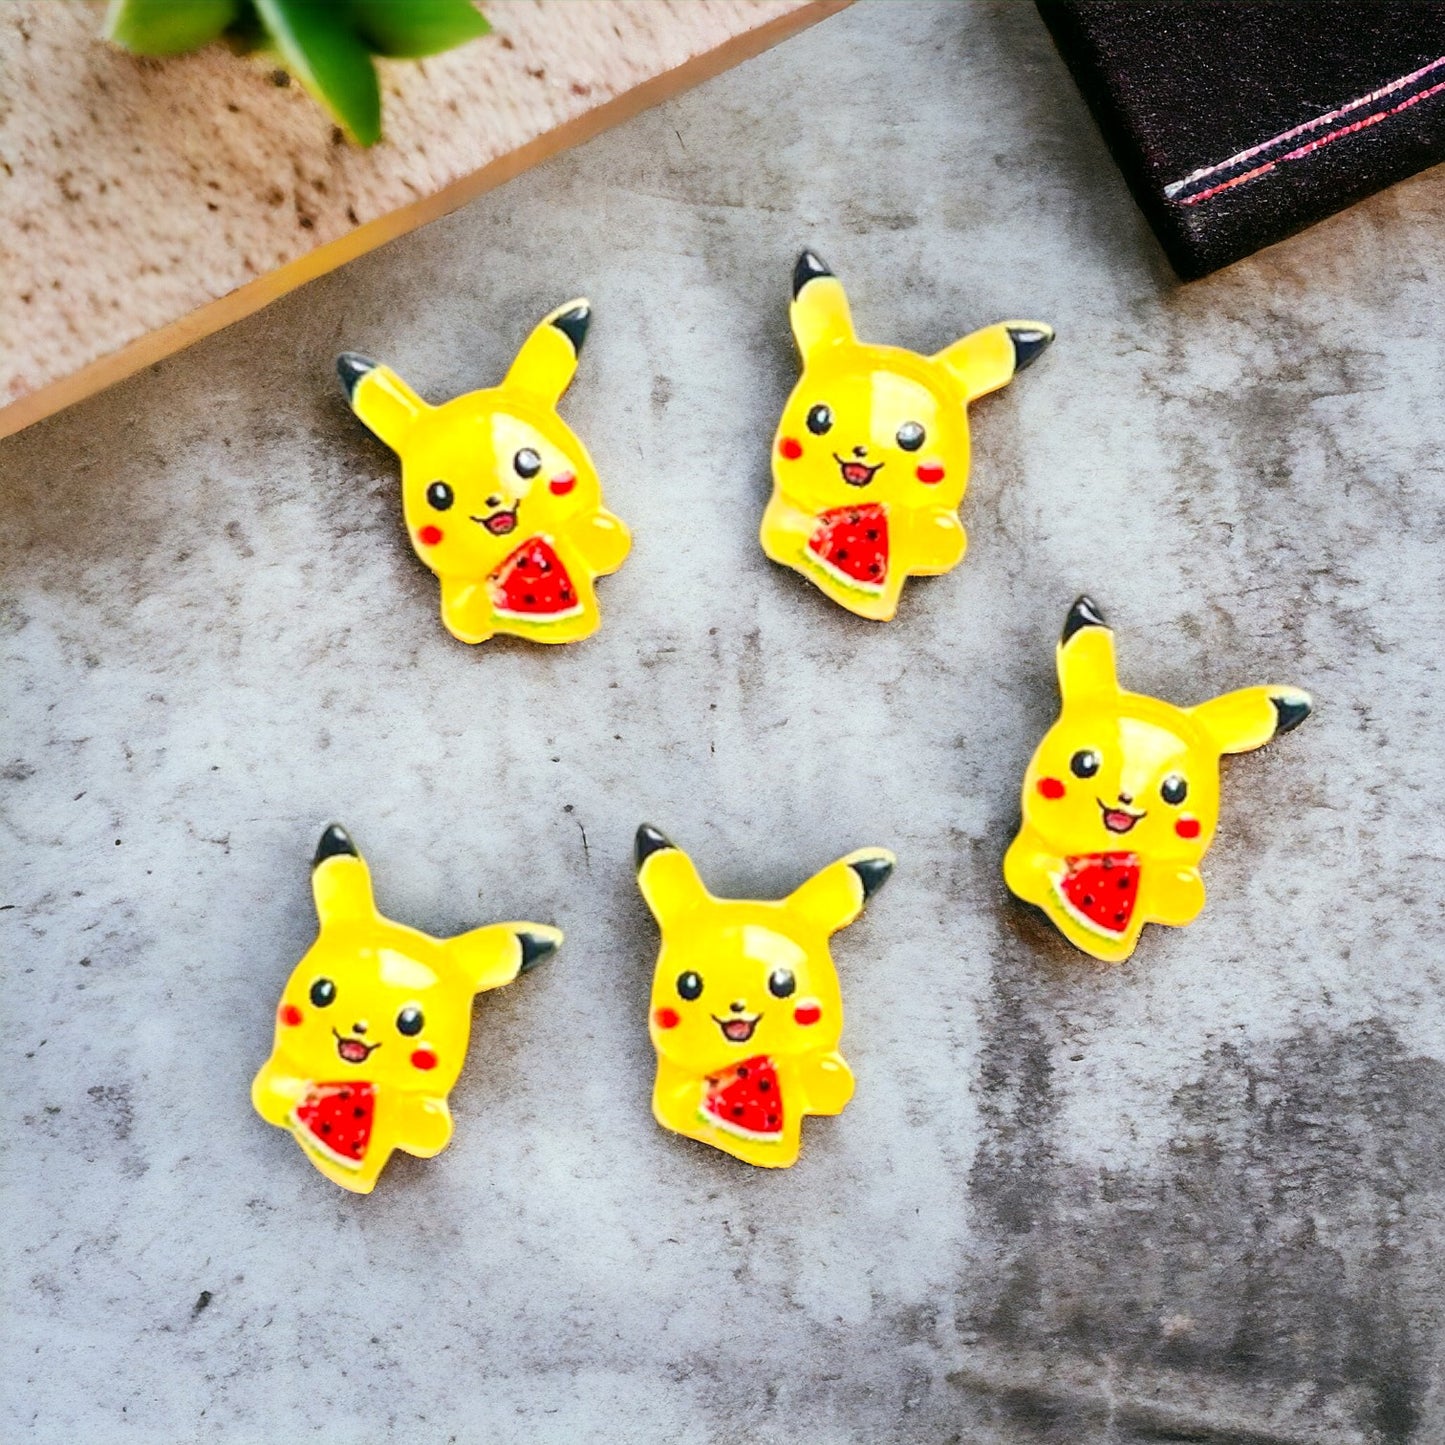 Mini - Shiny Resin Pikachu Pokémon